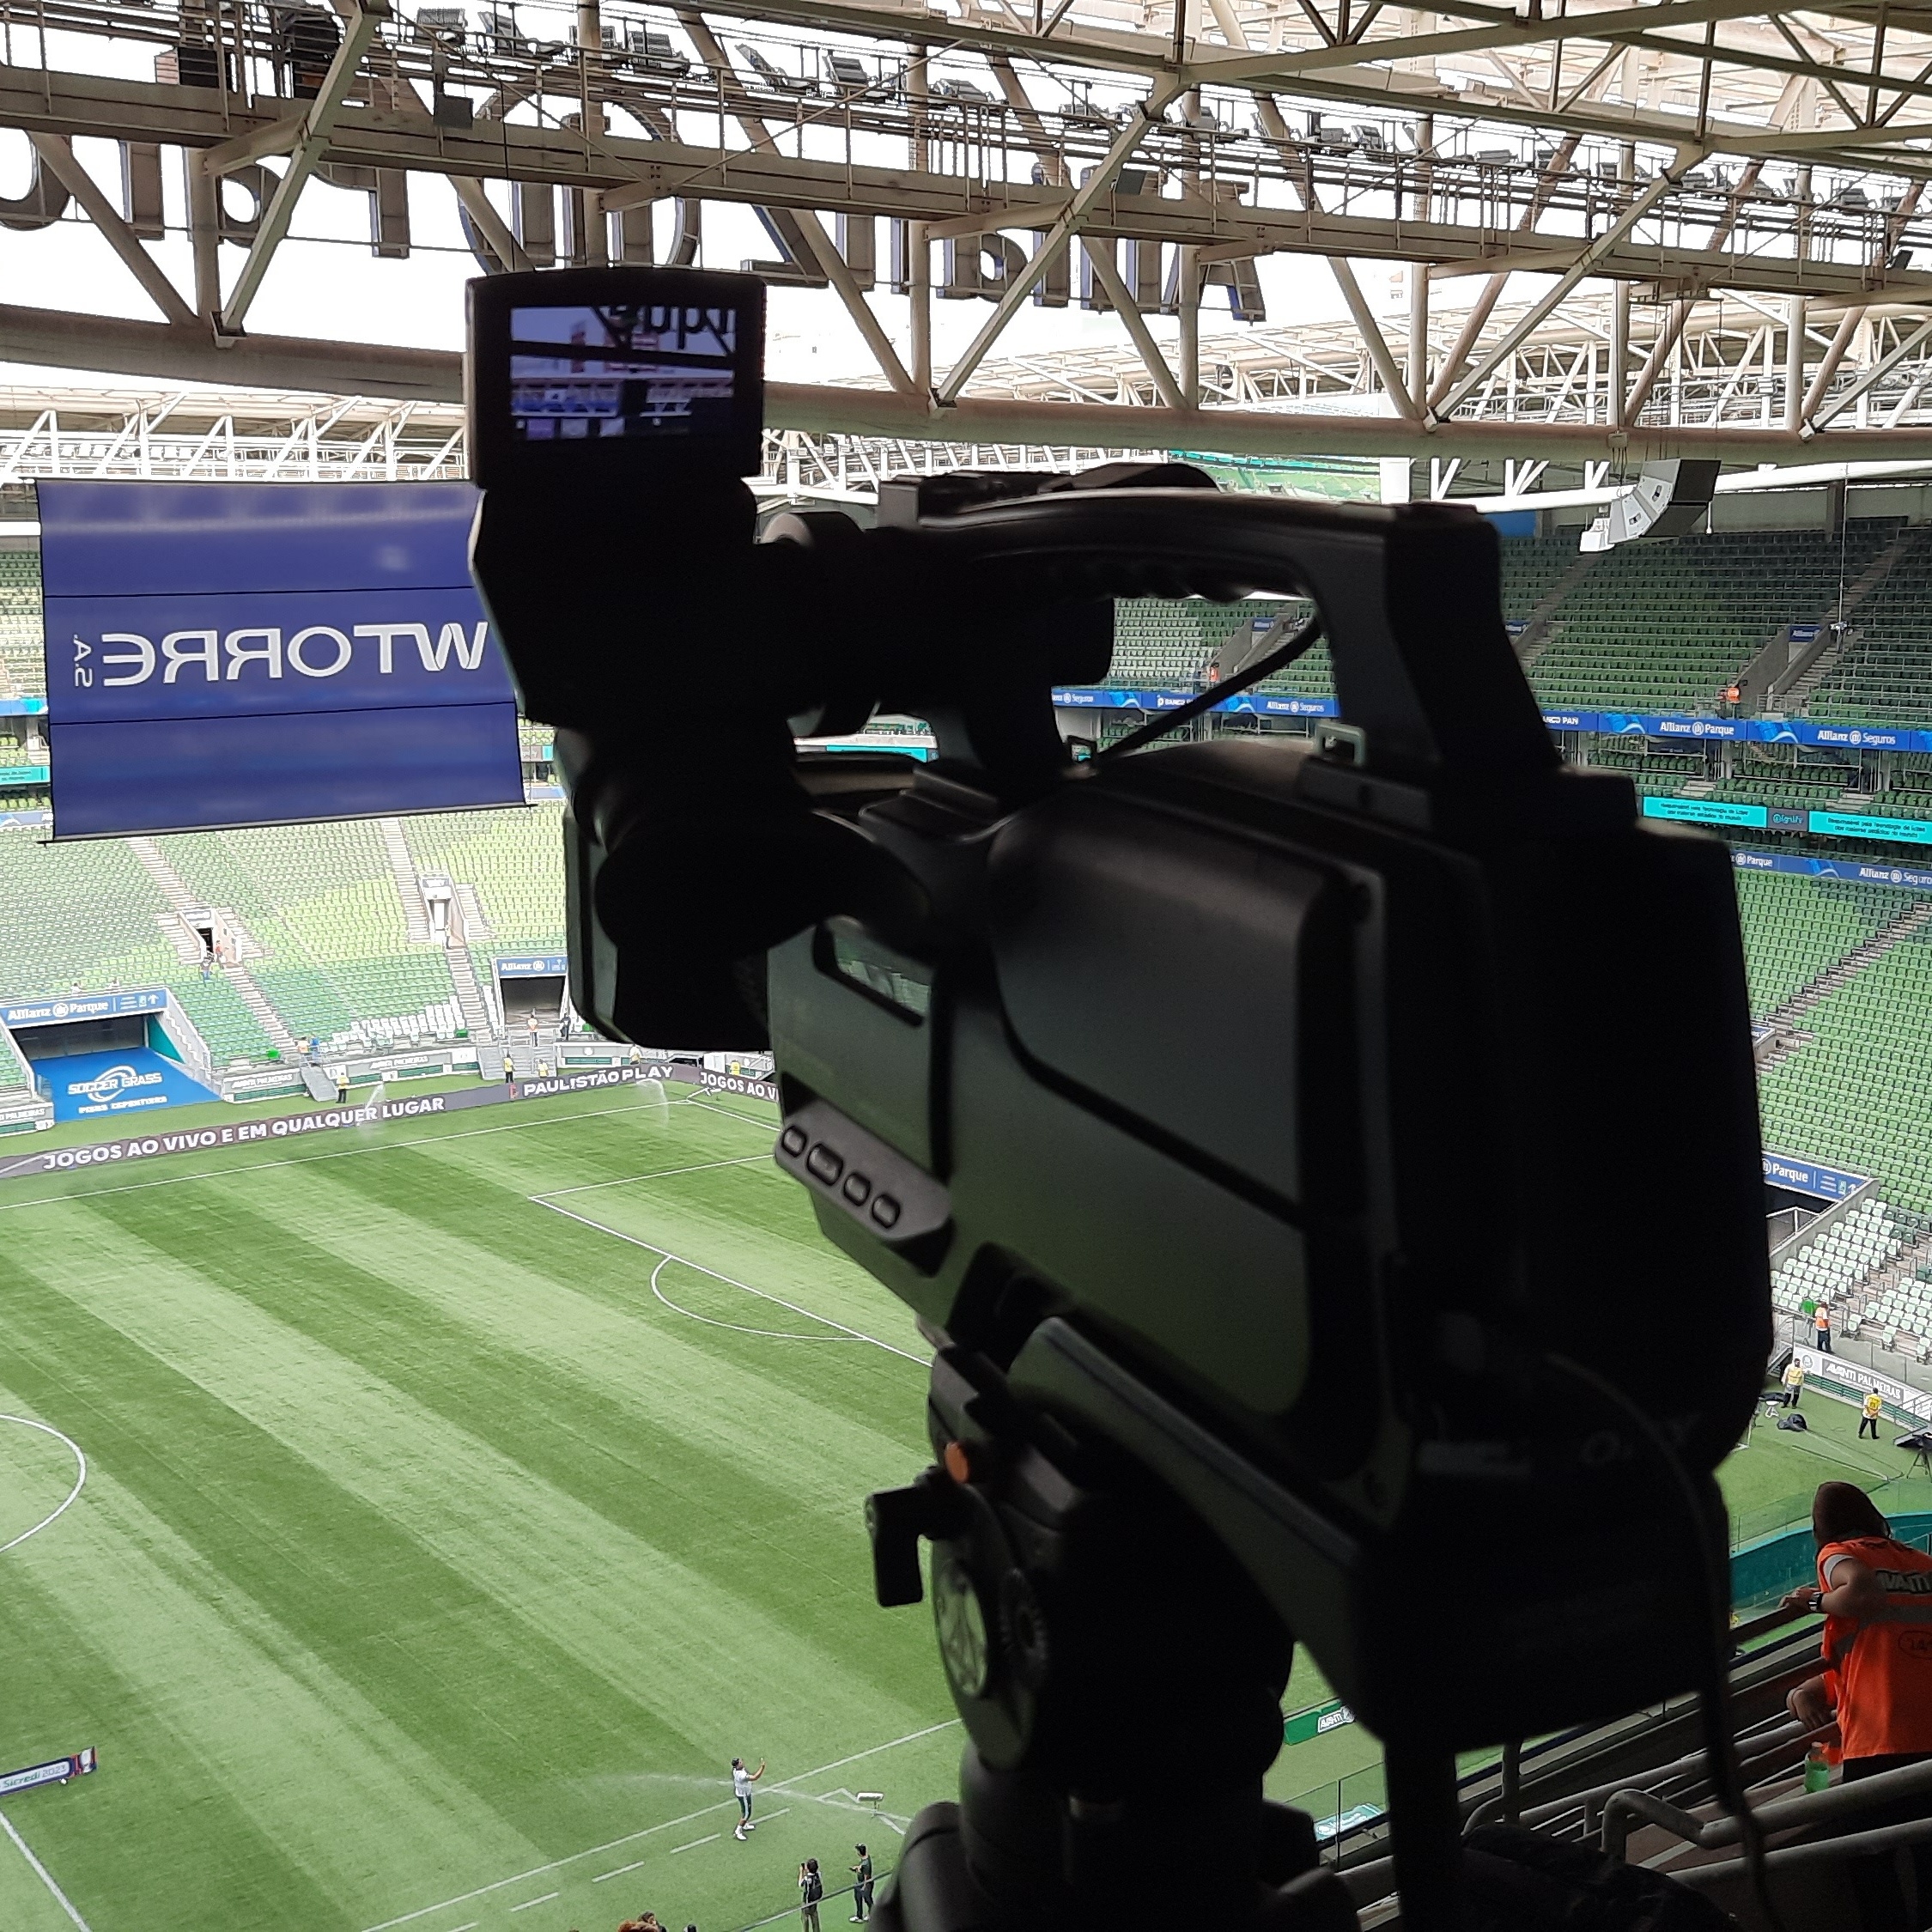 TNT voltará a transmitir jogos do Campeonato Brasileiro - MKT Esportivo